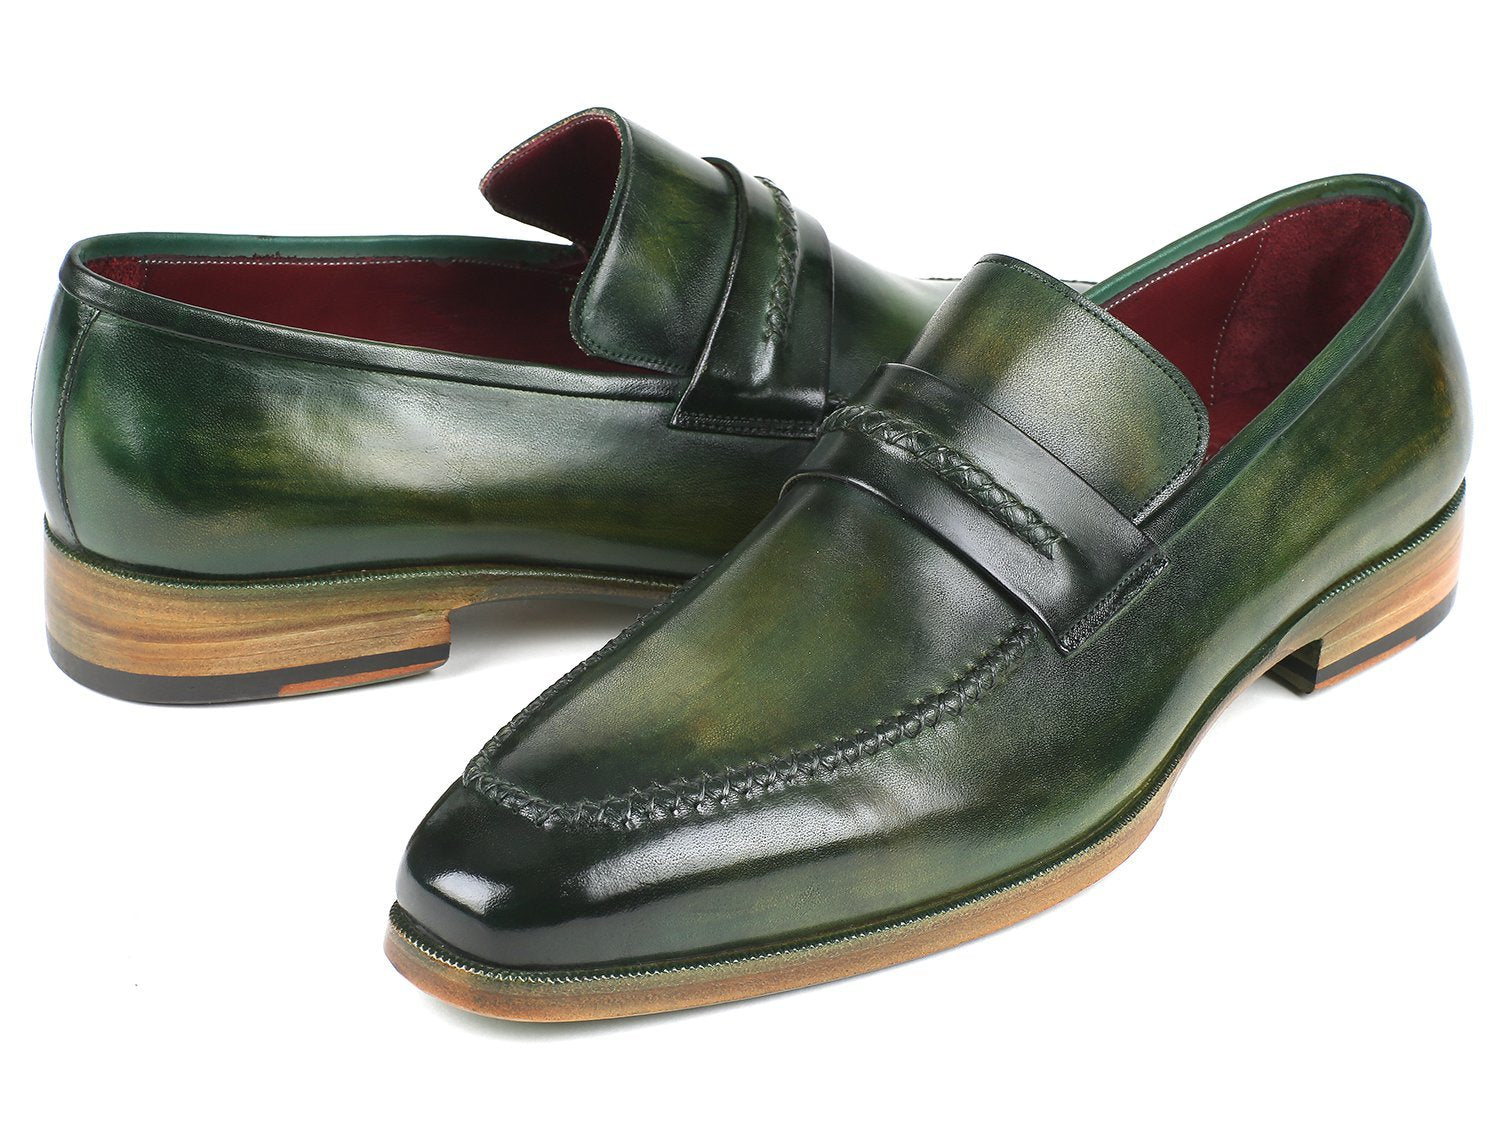 Verdone - Men's Loafer Shoes Green